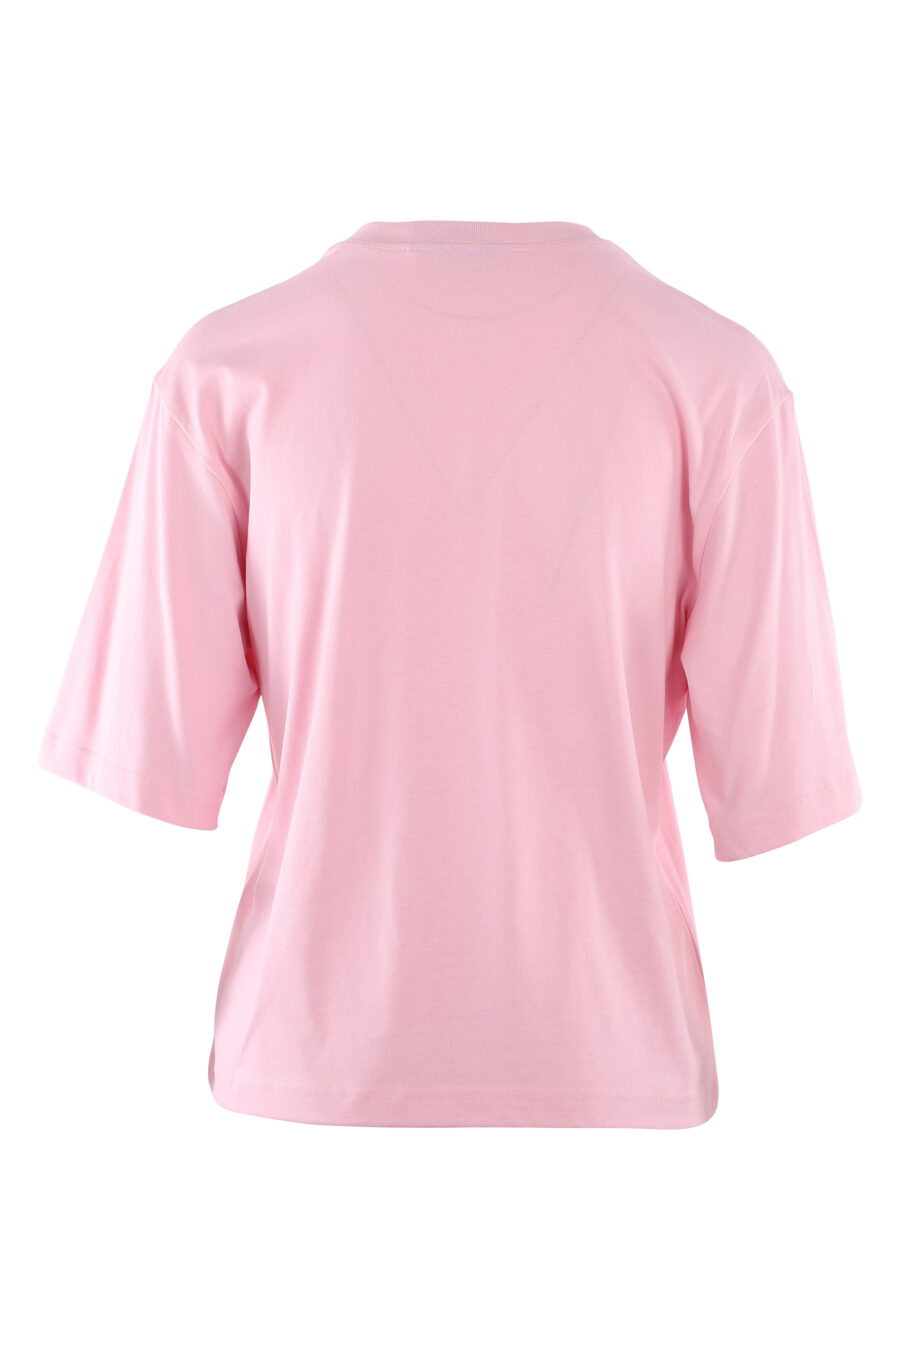 T-shirt cor-de-rosa com o logótipo do olho e da estrela - IMG 6125